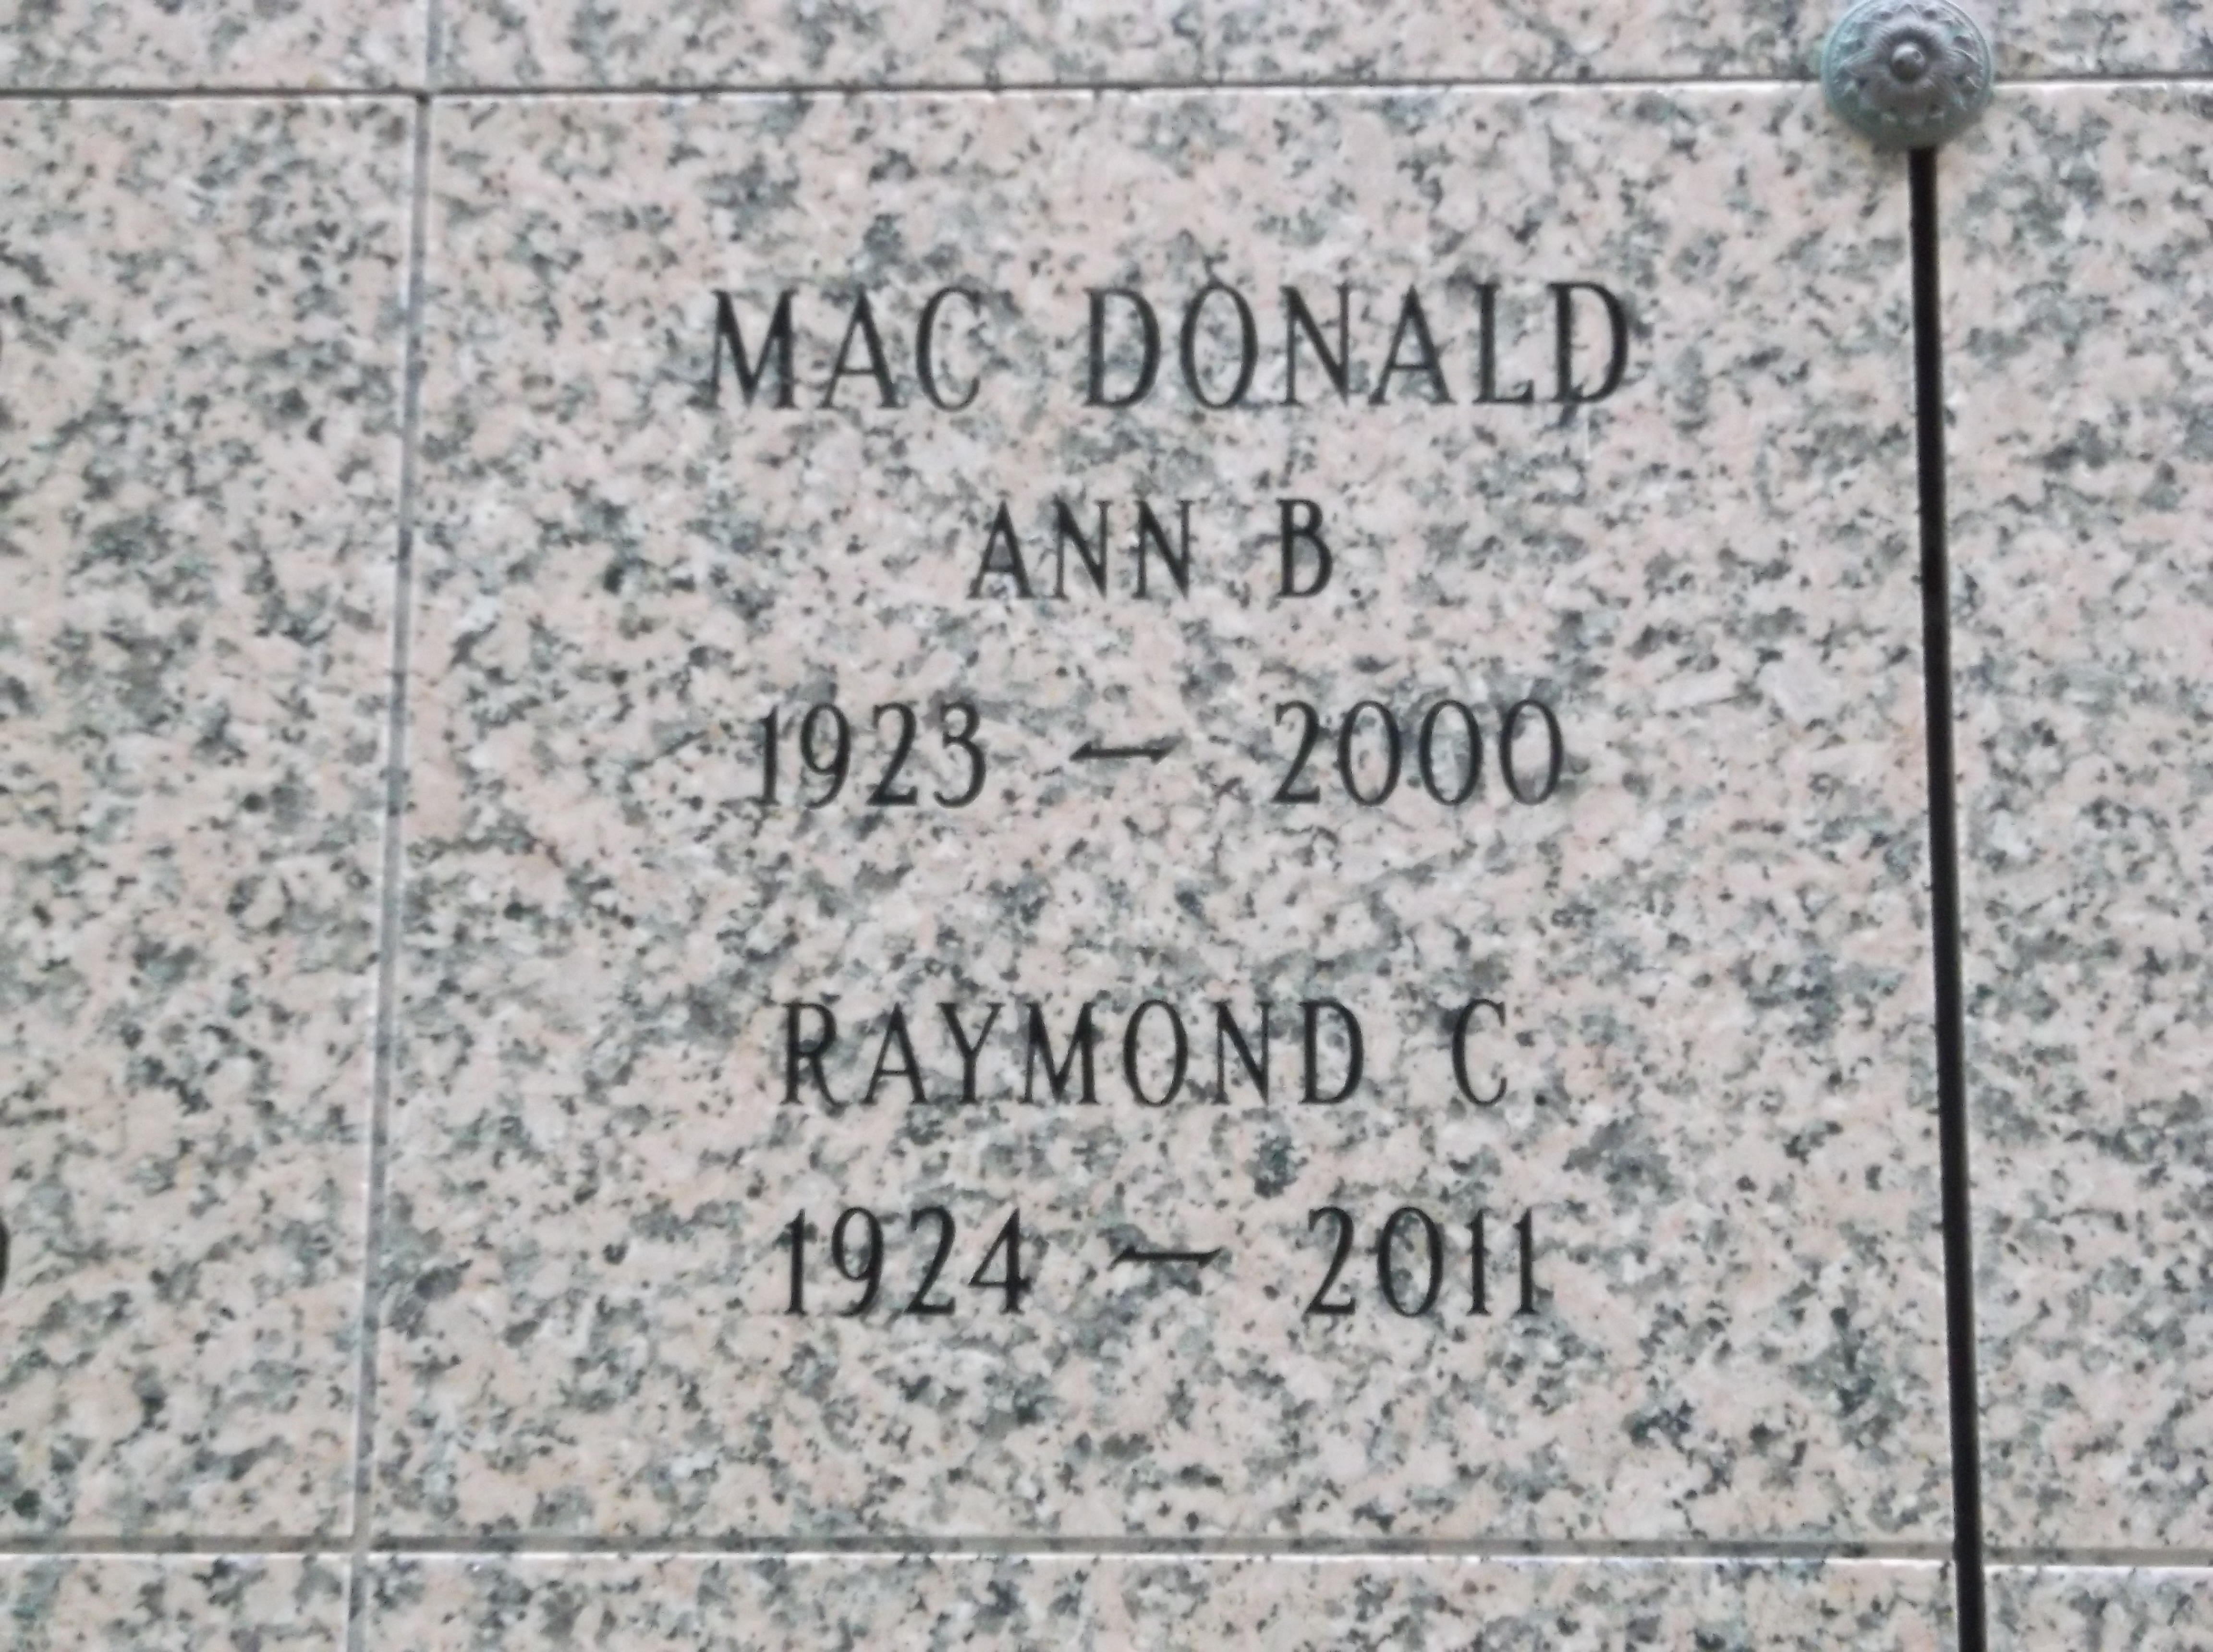 Ann B Mac Donald